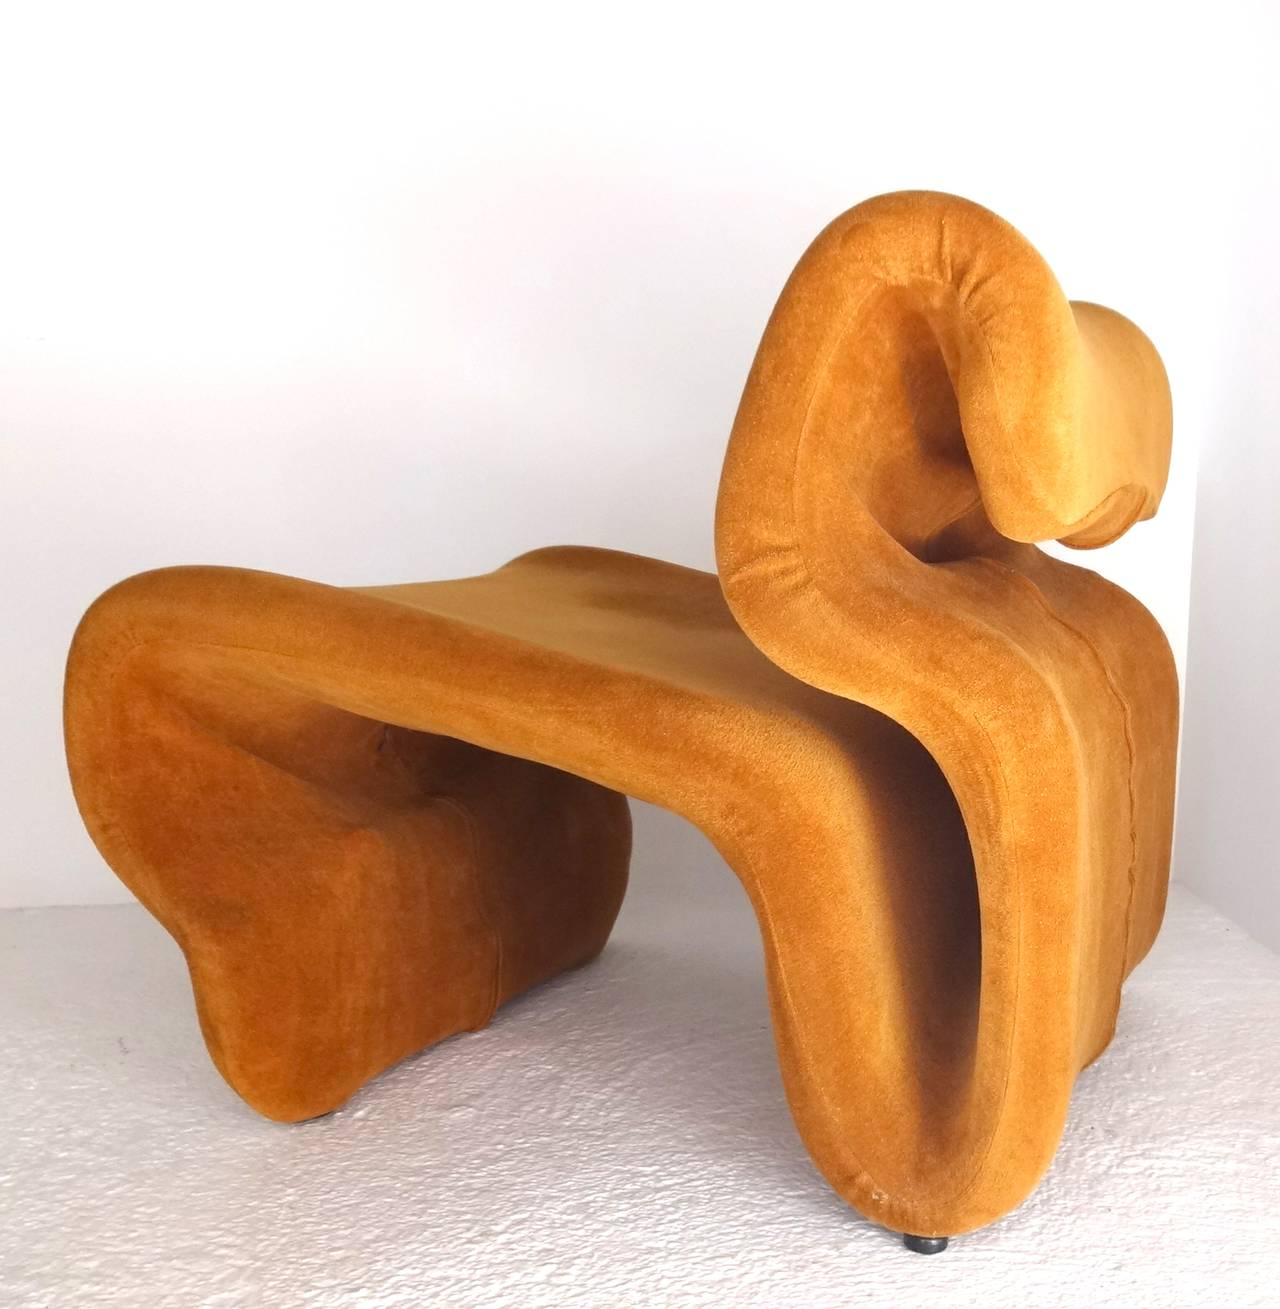 Jan Ekselius easy lounge chair was designed in 1970 by Jan Ekselius for J. O. Carlsson, Vetlanda.